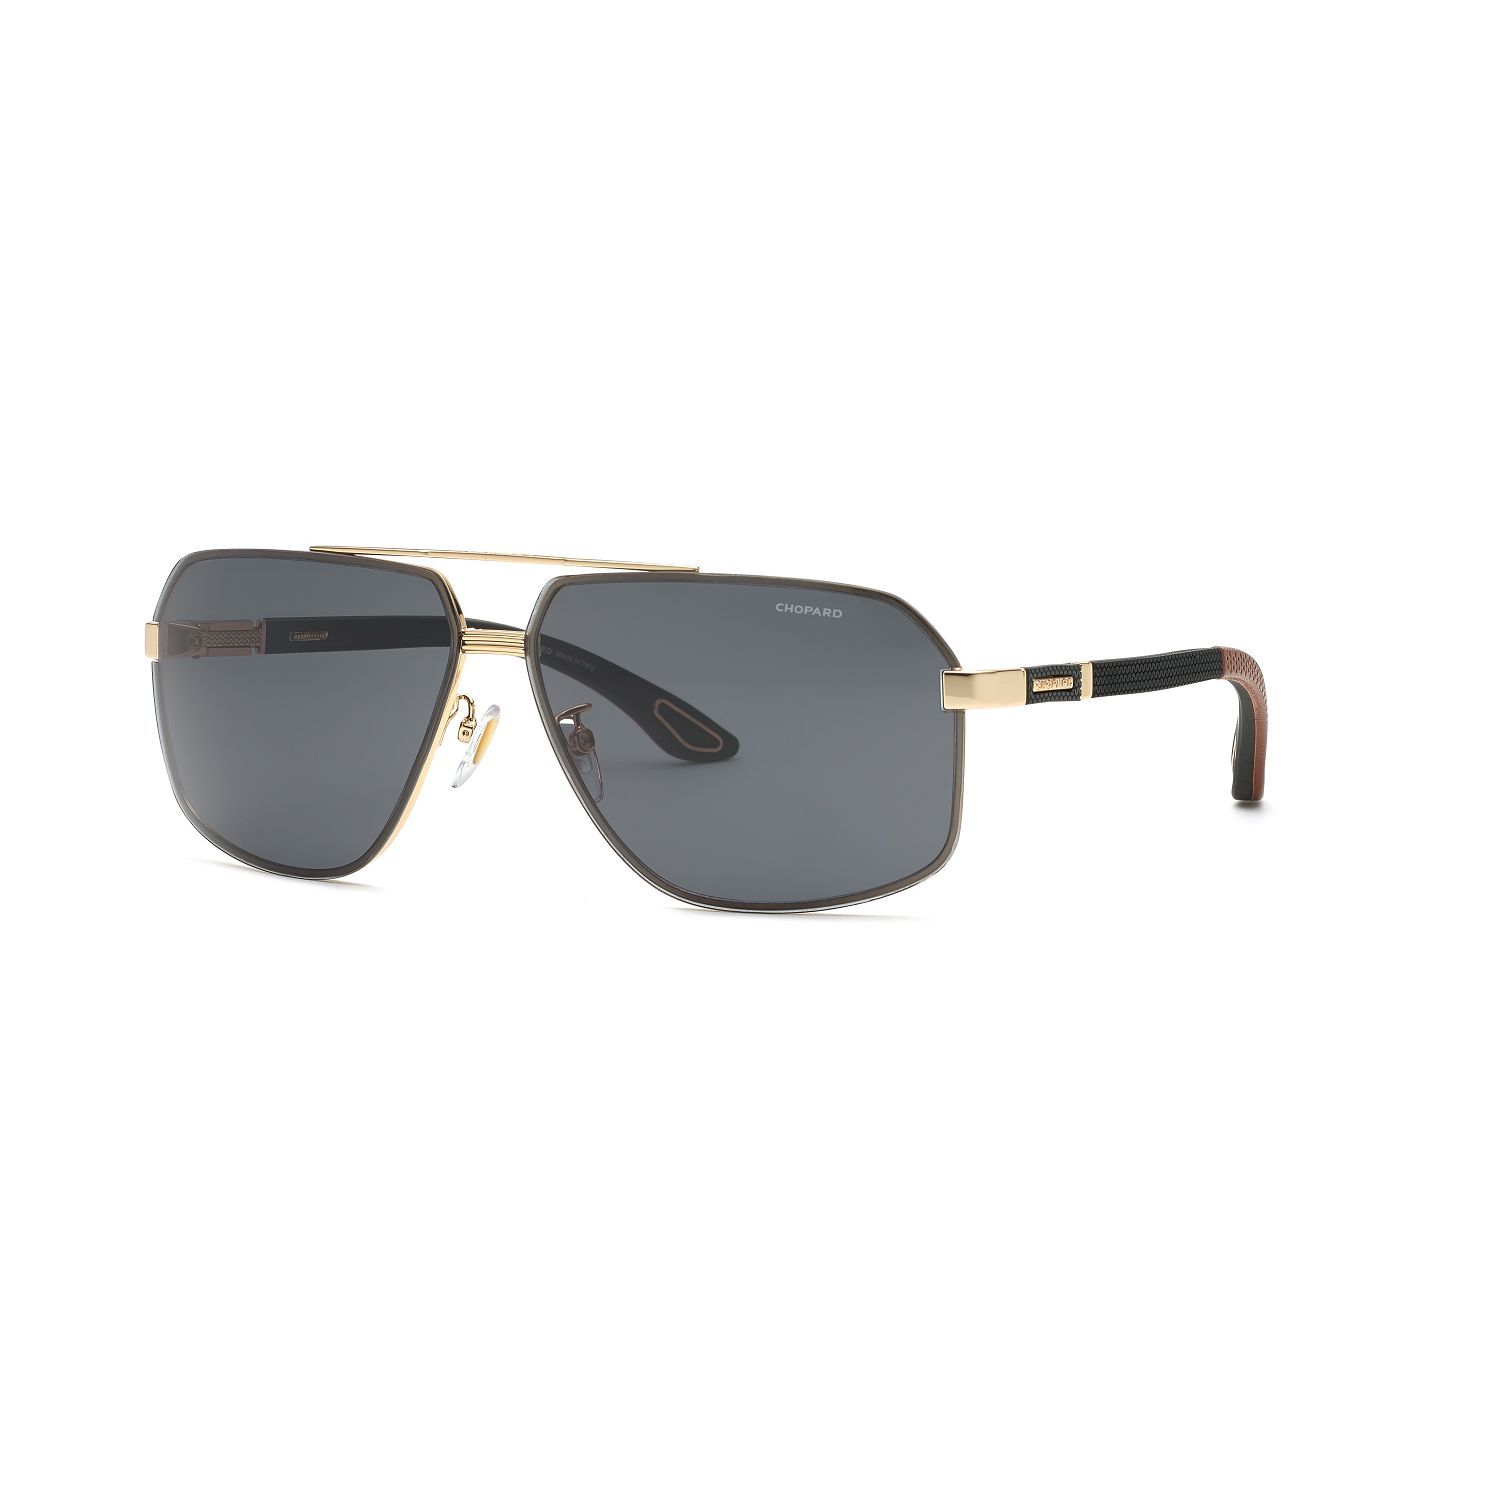 SCHG89V Square Sunglasses 300 - size 66